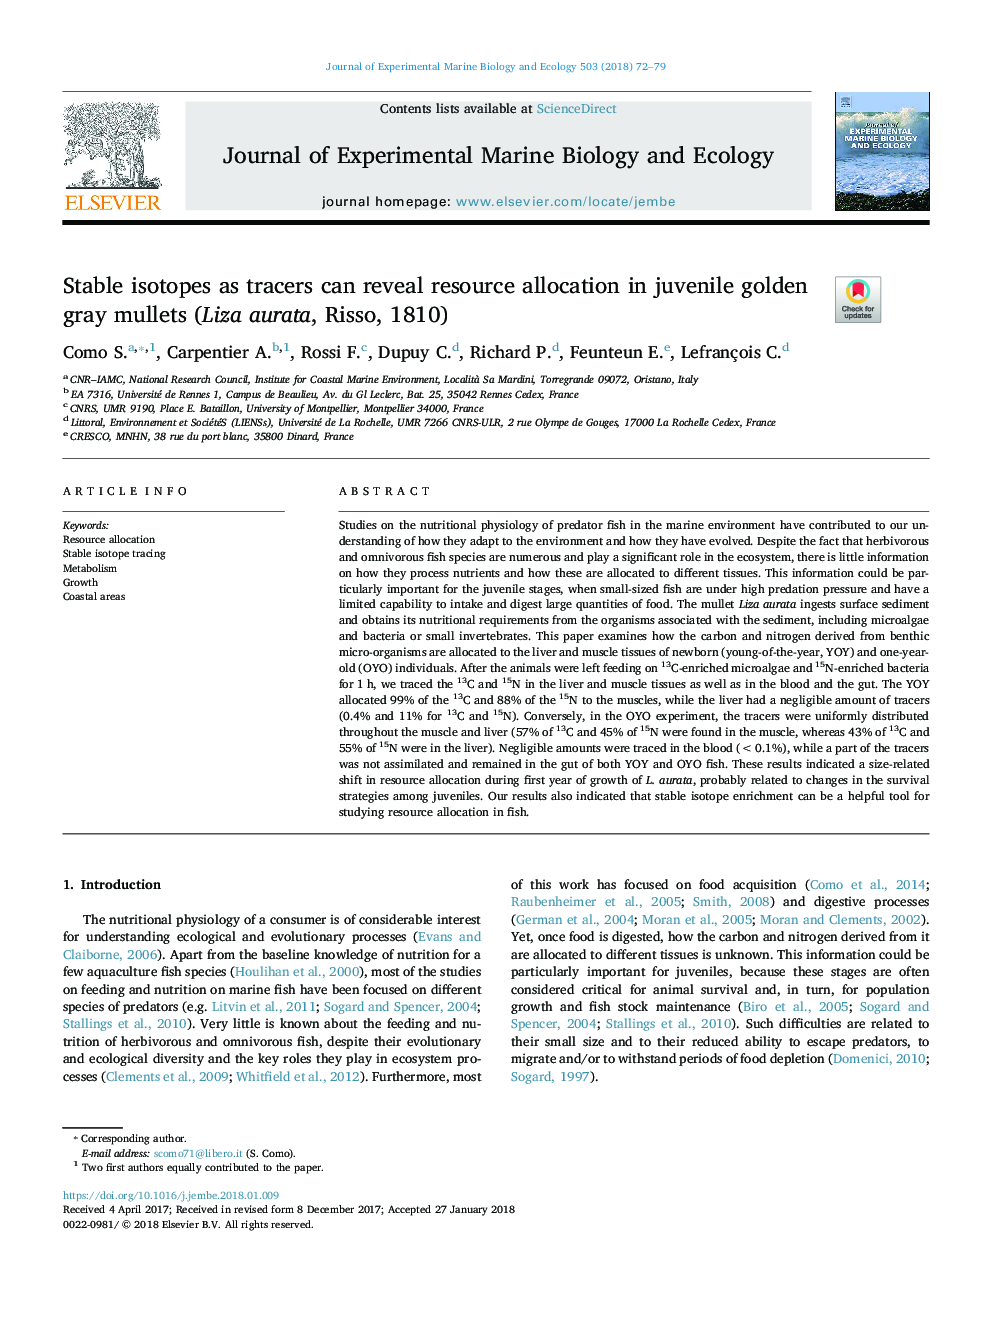 ایزوتوپهای پایدار به عنوان ردیاب های زیستی می توانند تخصیص منابع را در ماهیچه های خاکستری طلایی نوجوانان (لیزا اوراتا، ریسو، 1810) 